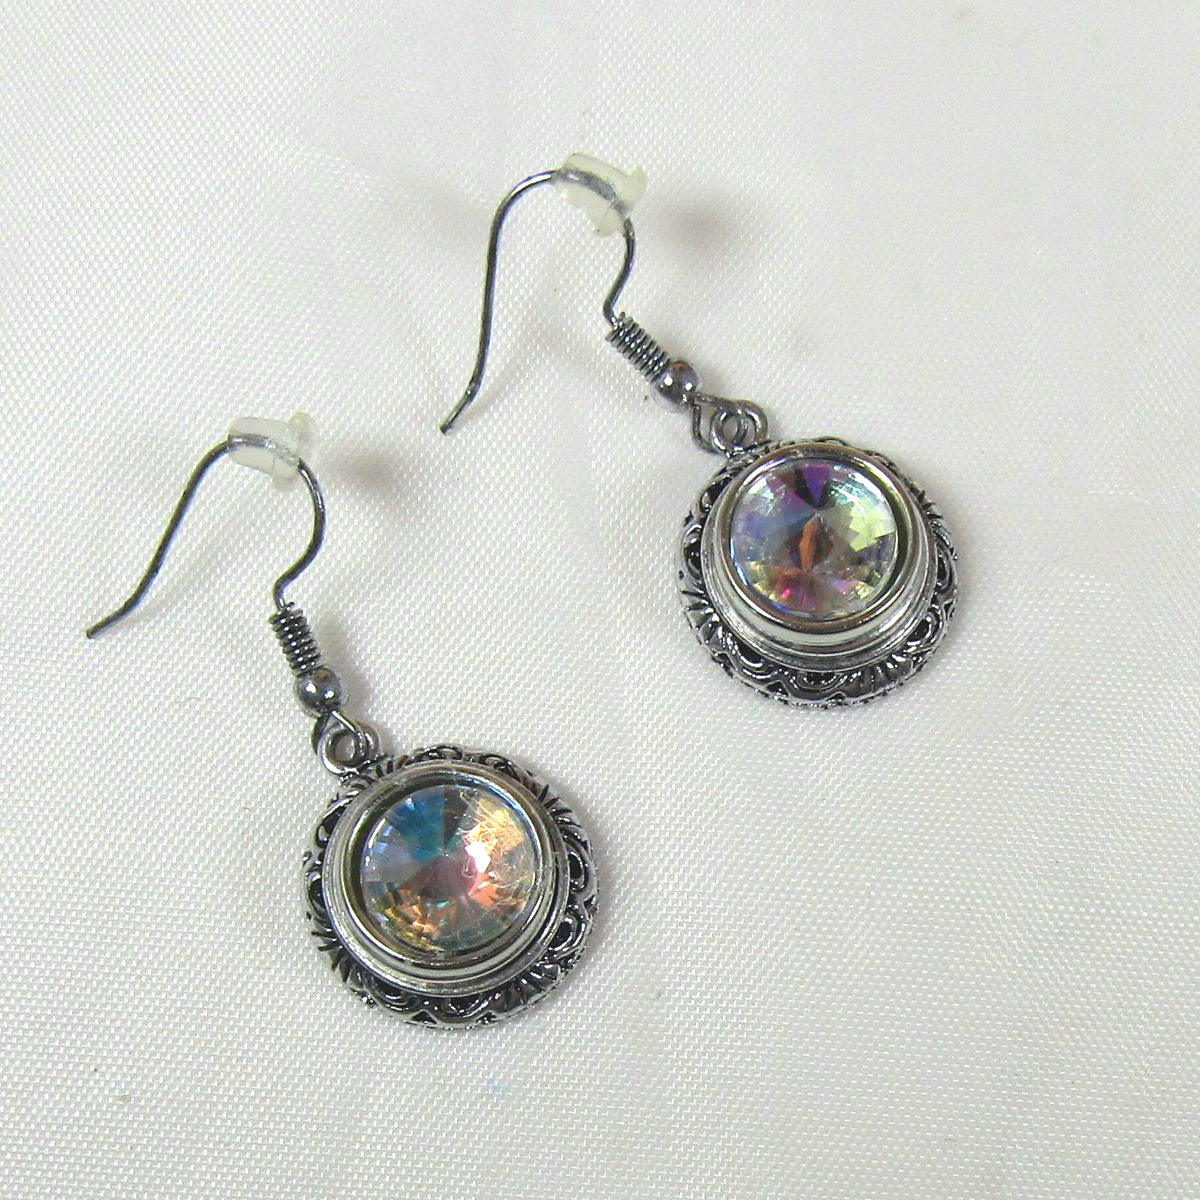 A/B Crystal & Silver Earrings - VP's Jewelry